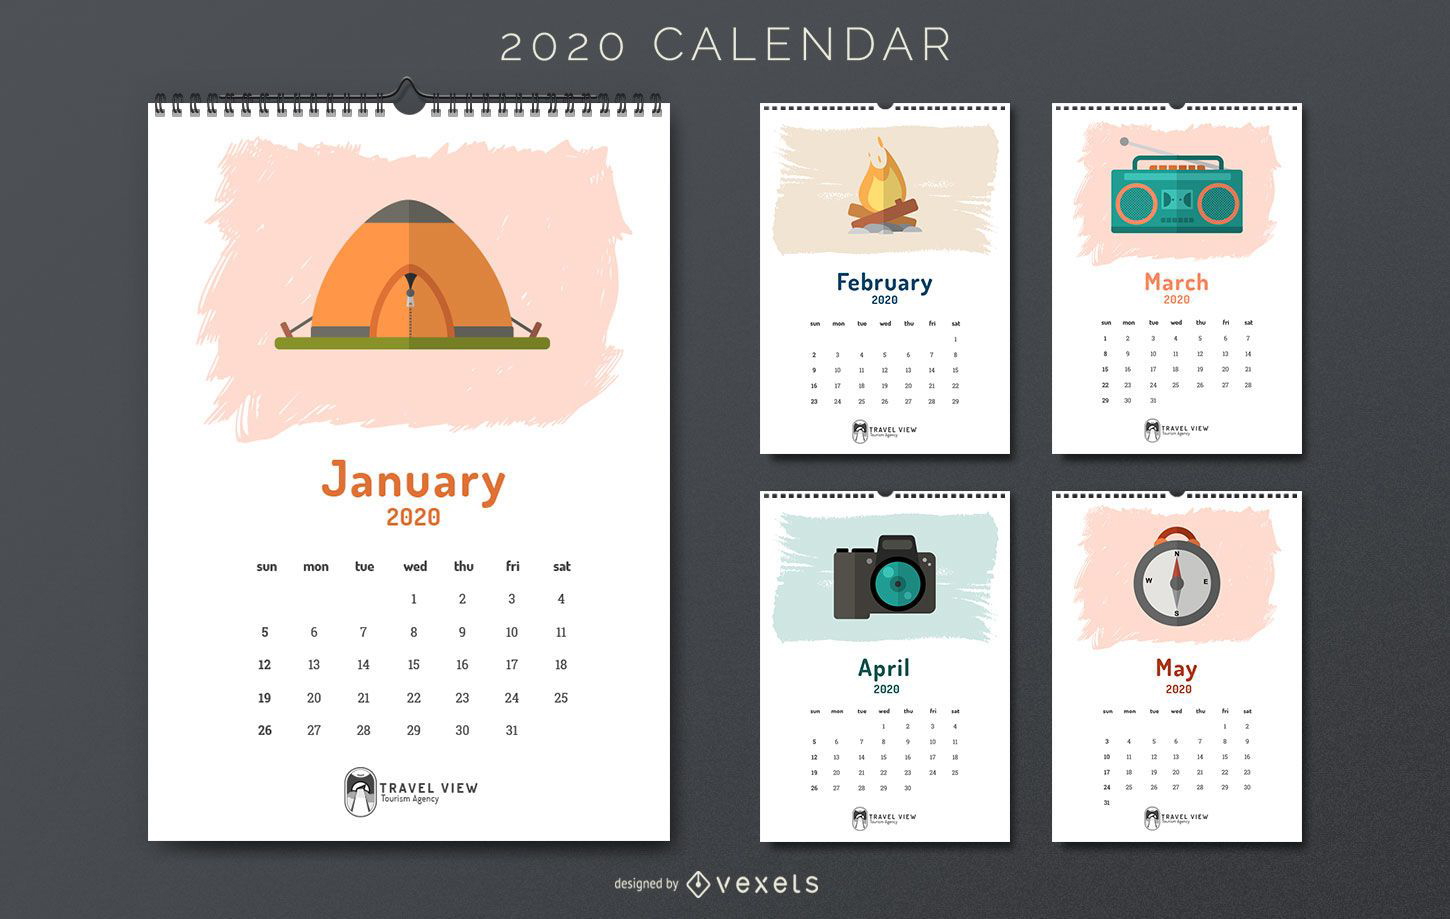 Calendario de viajes 2020